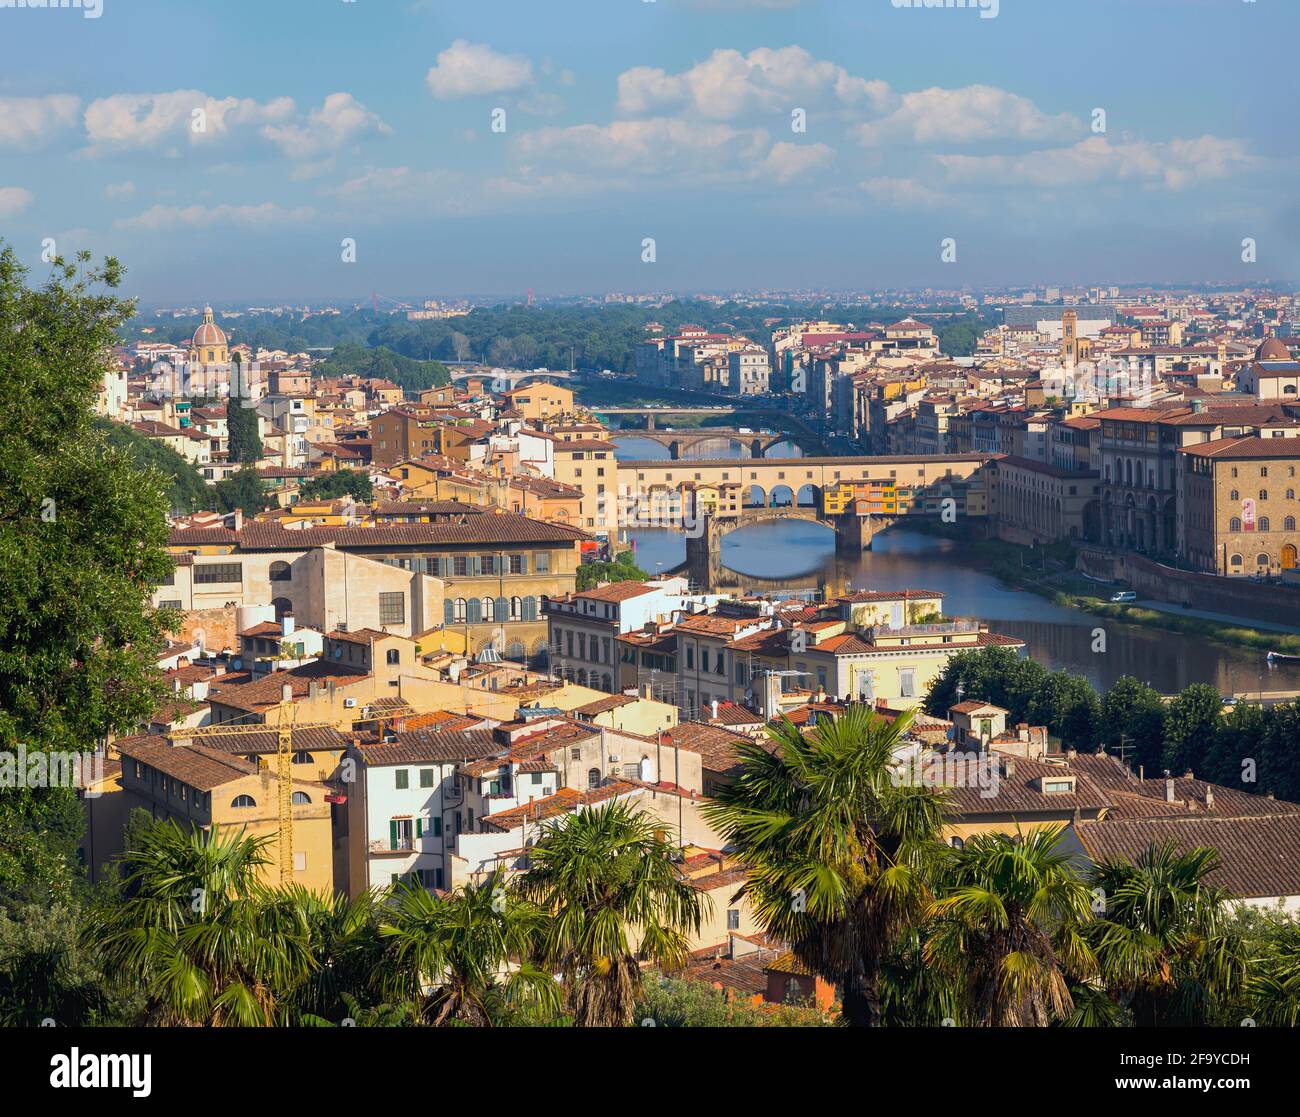 Florenz, Provinz Florenz, Toskana, Italien. Blick von der Piazzale Michelangelo auf die Brücken über den Arno. Ponte Vecchio im Vordergrund. Stockfoto